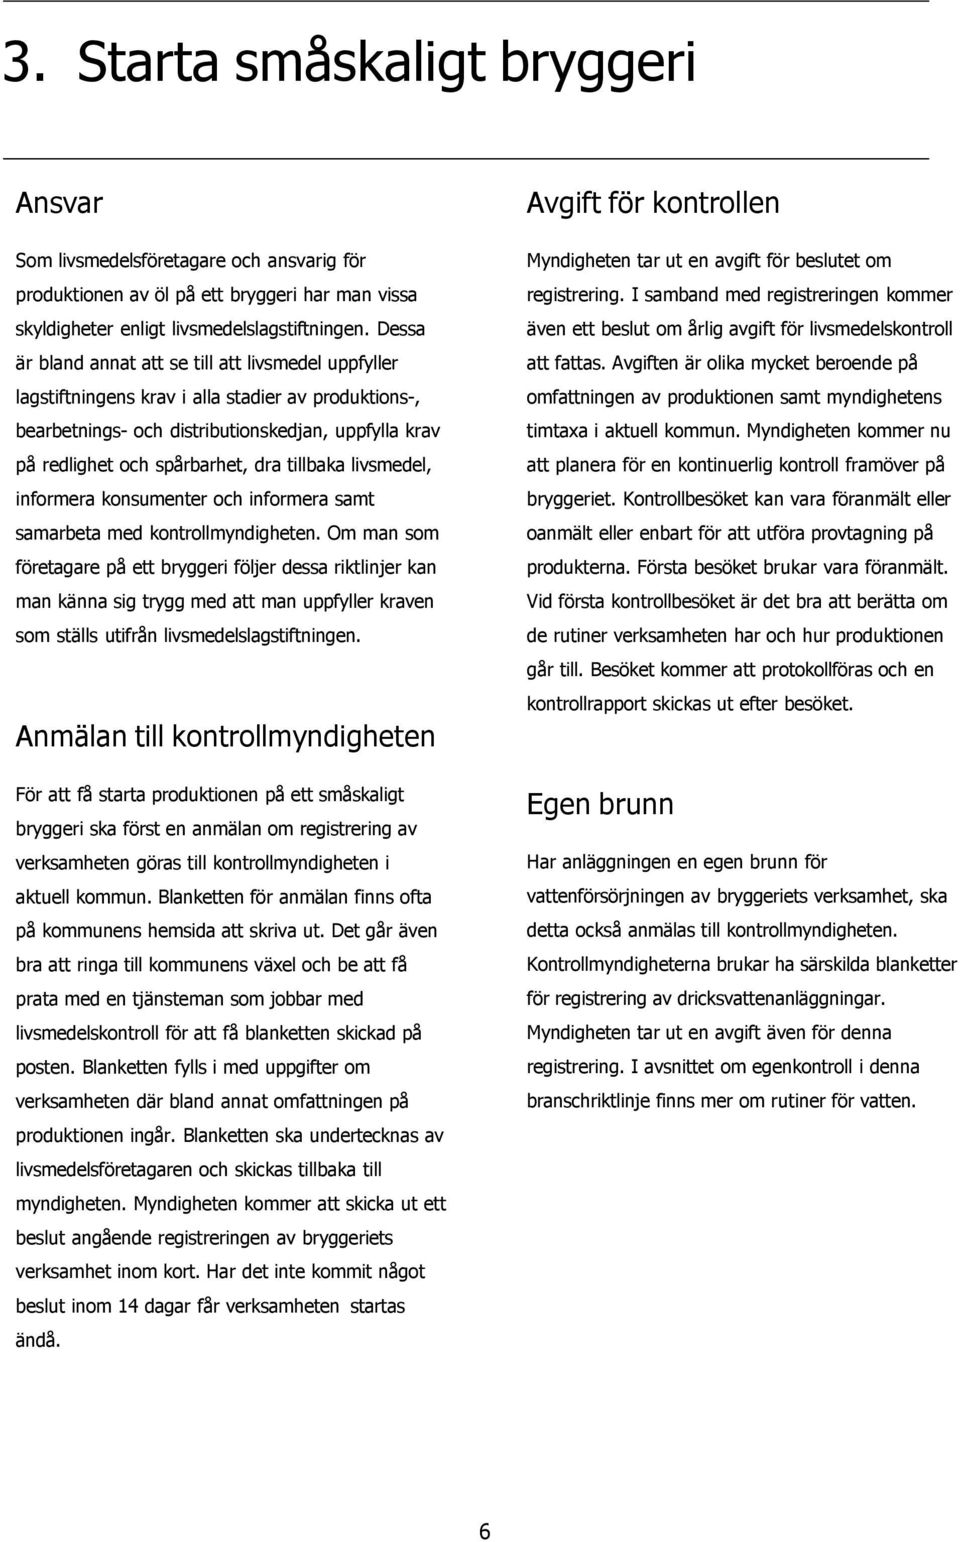 Branschriktlinjer. för Småbryggerier - PDF Gratis nedladdning